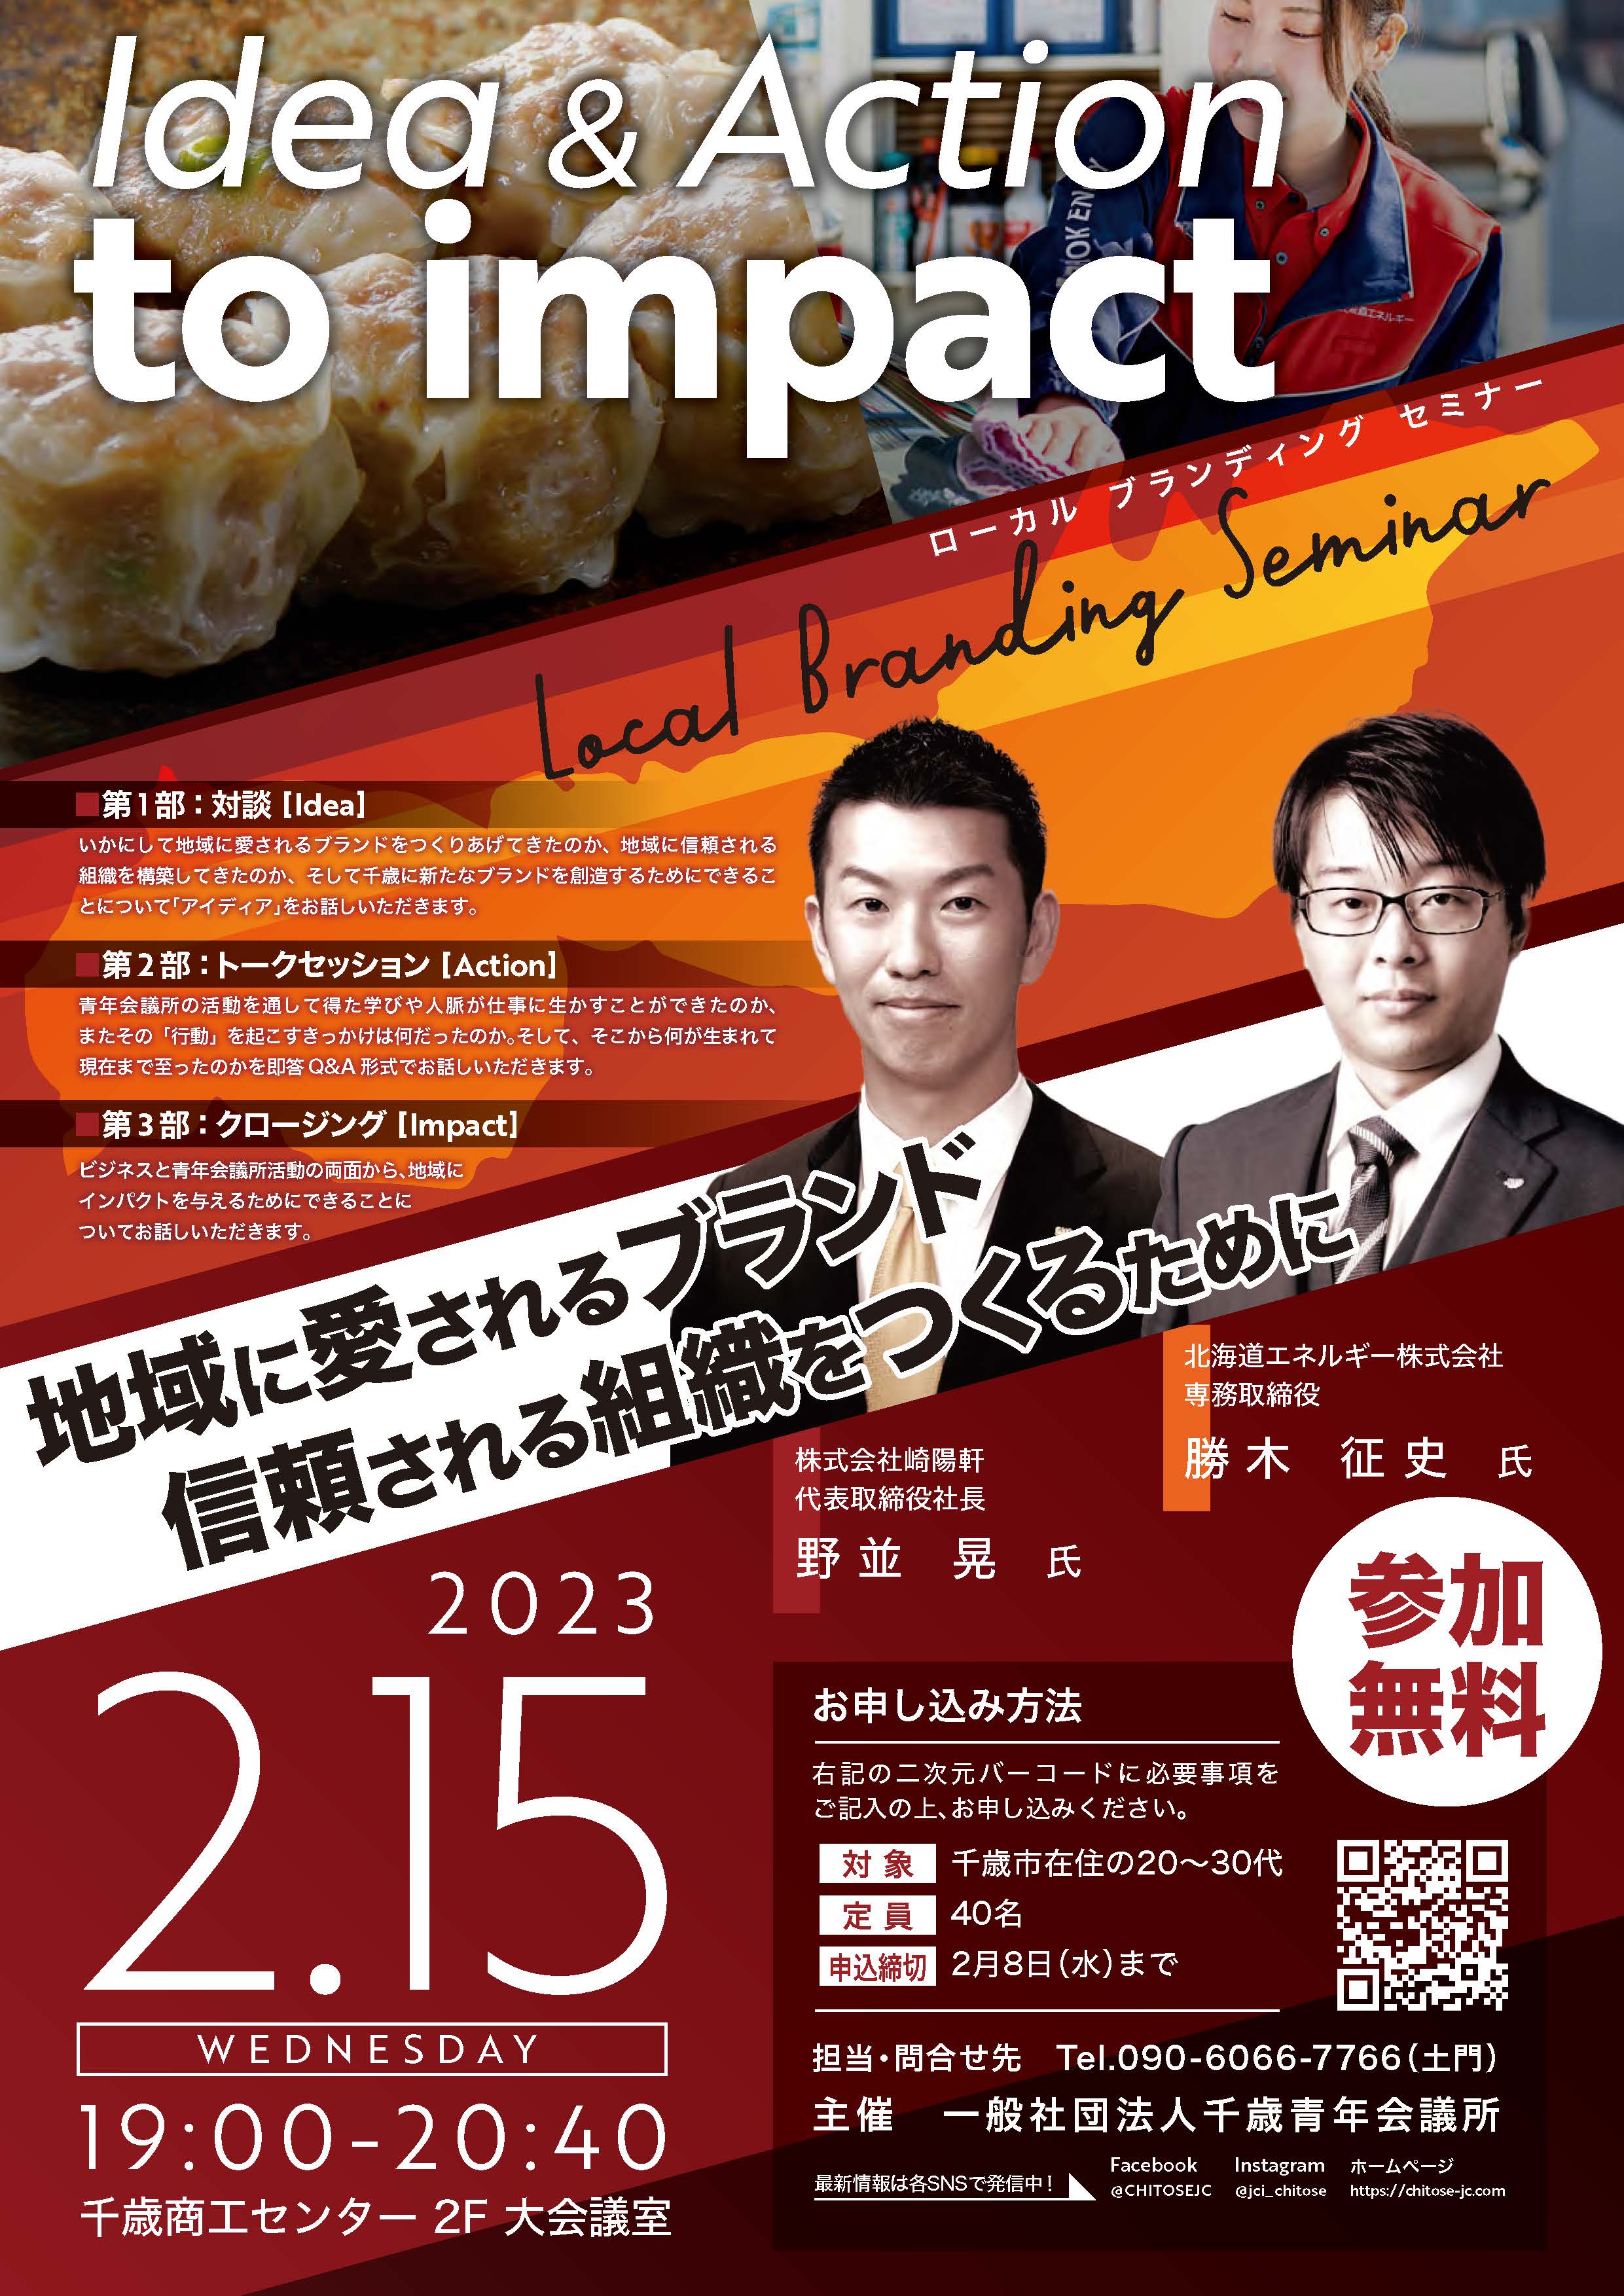 ローカルブランディングセミナー「Idea & Action to impact」開催のご 